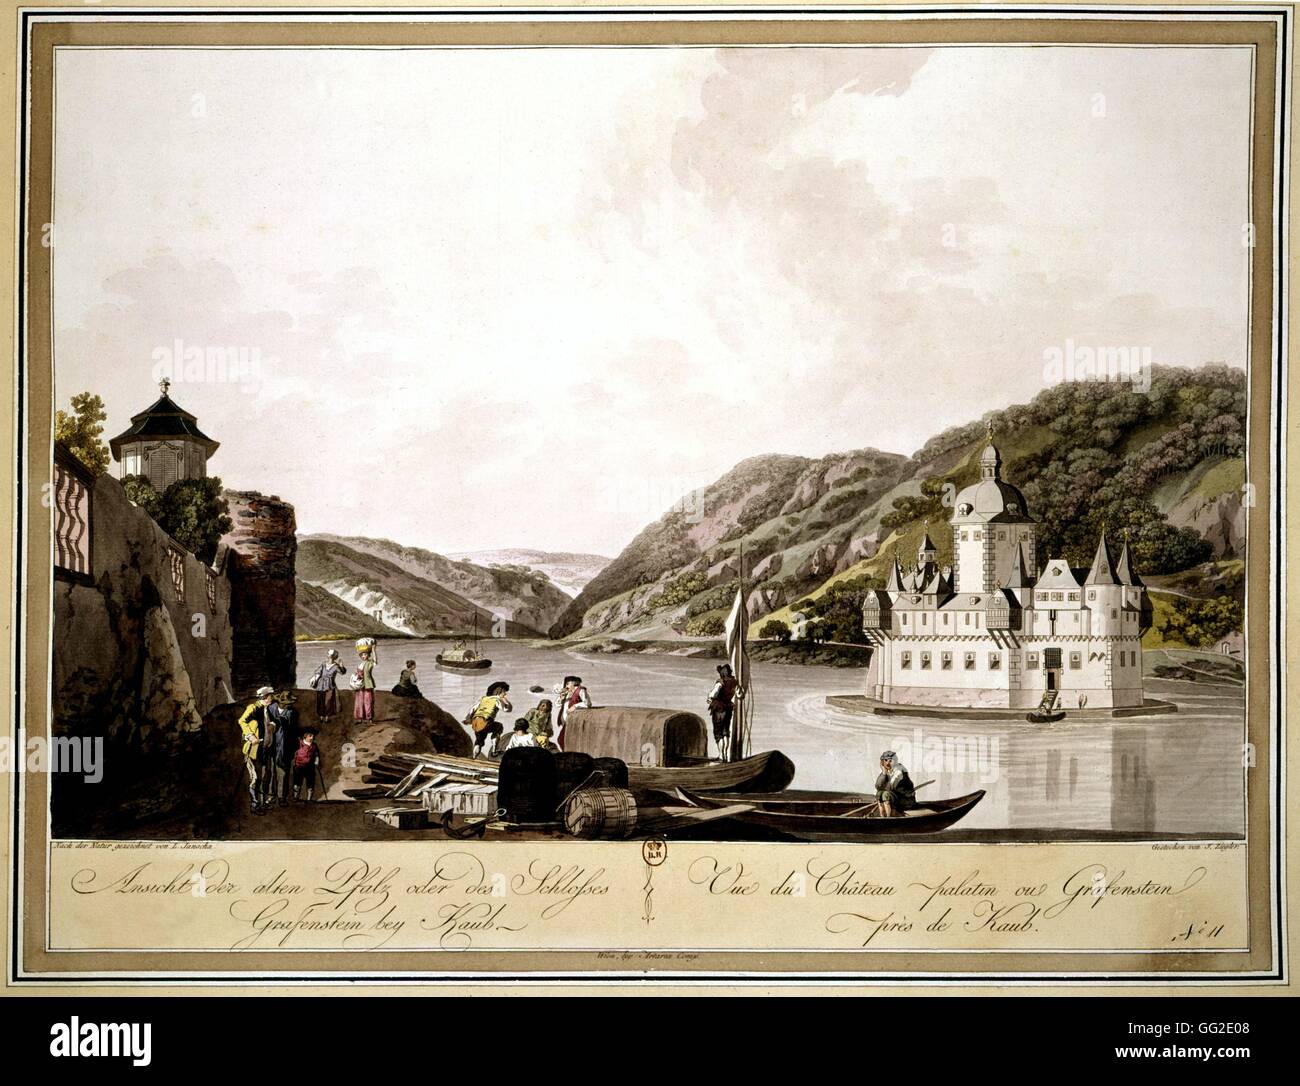 Janscha. Vue sur le château ou Grafenstein Palatine sur le Rhin Allemagne 1800 Banque D'Images